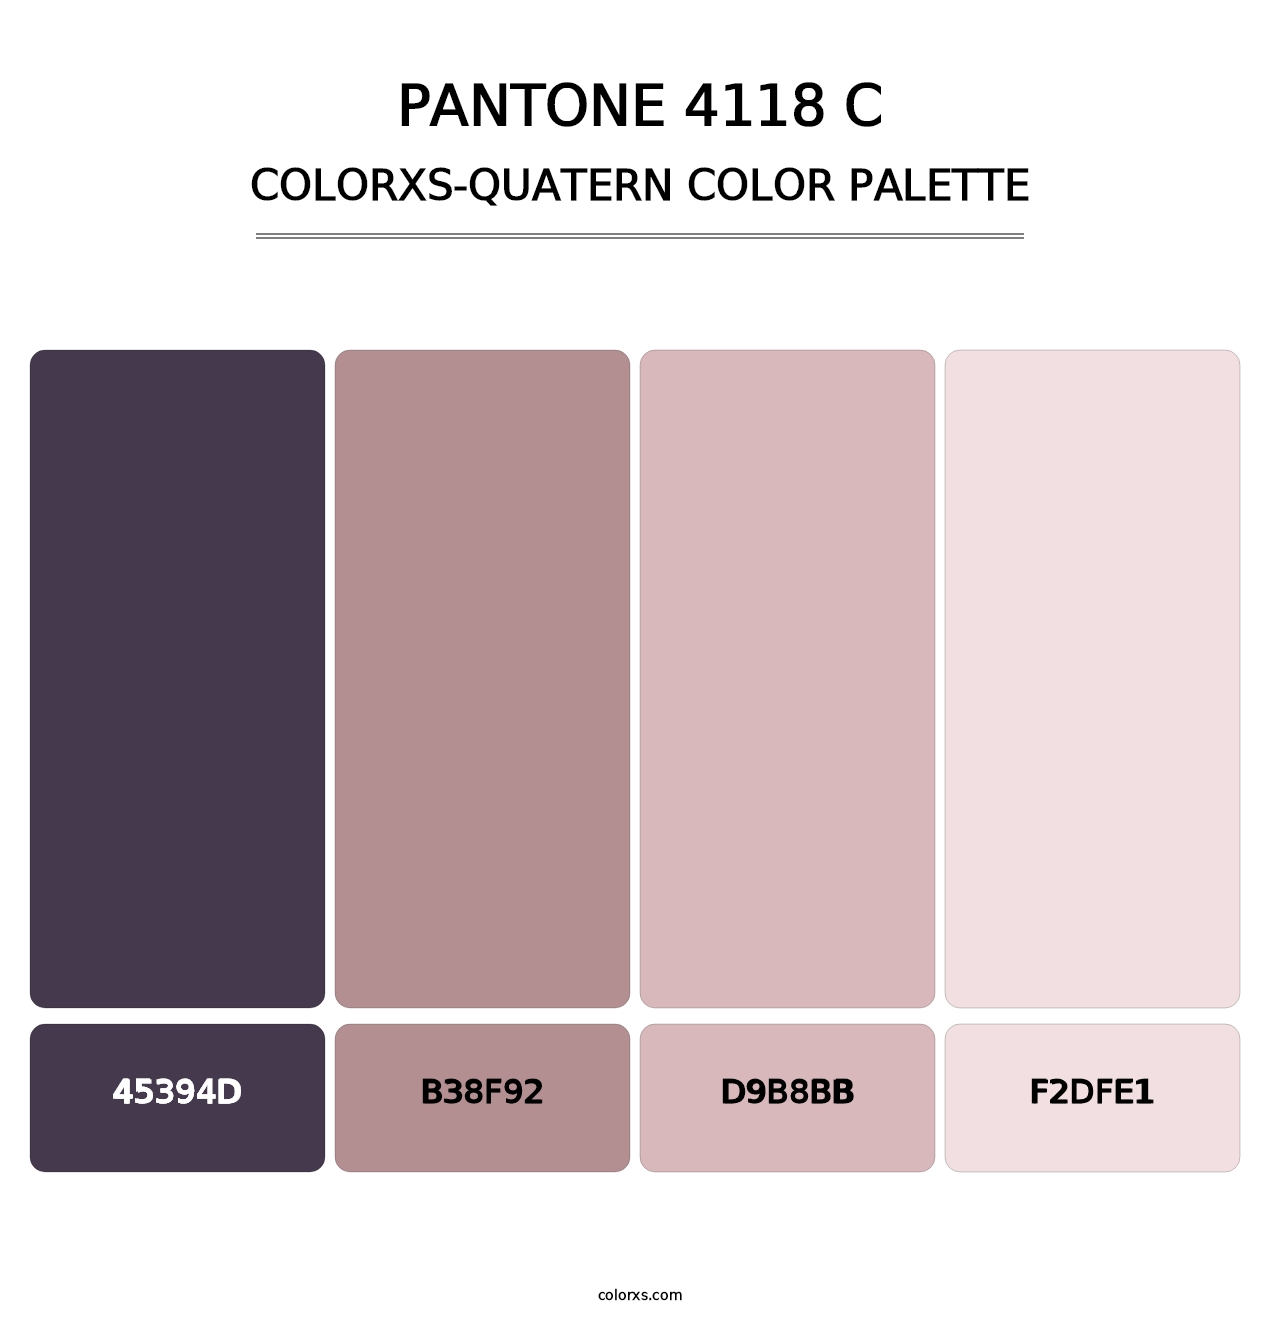 PANTONE 4118 C - Colorxs Quatern Palette